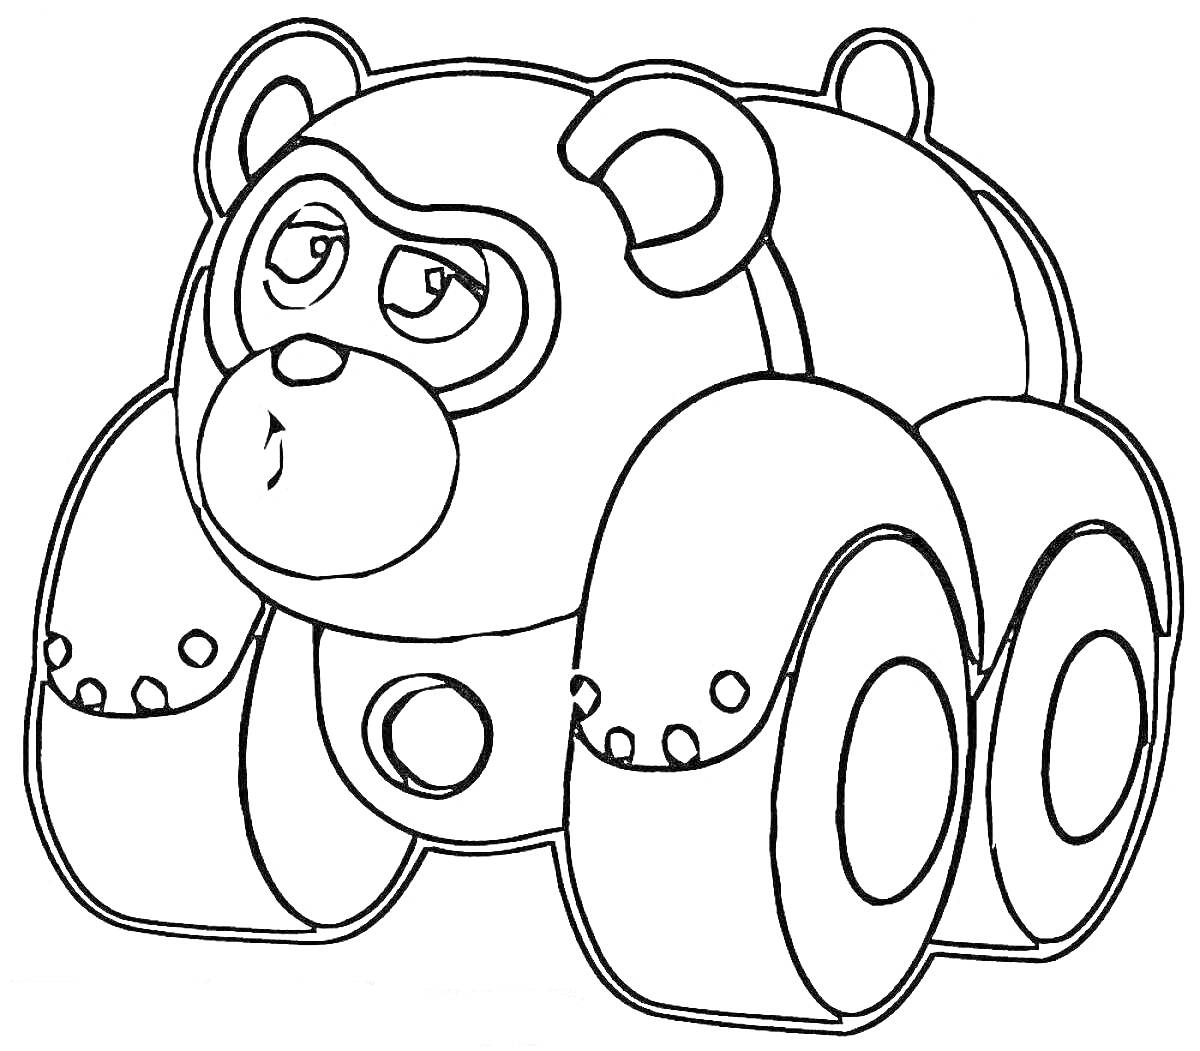 Медведь-машина из Врумиз, четырехколесный транспорт с ушами, глазами и маской.